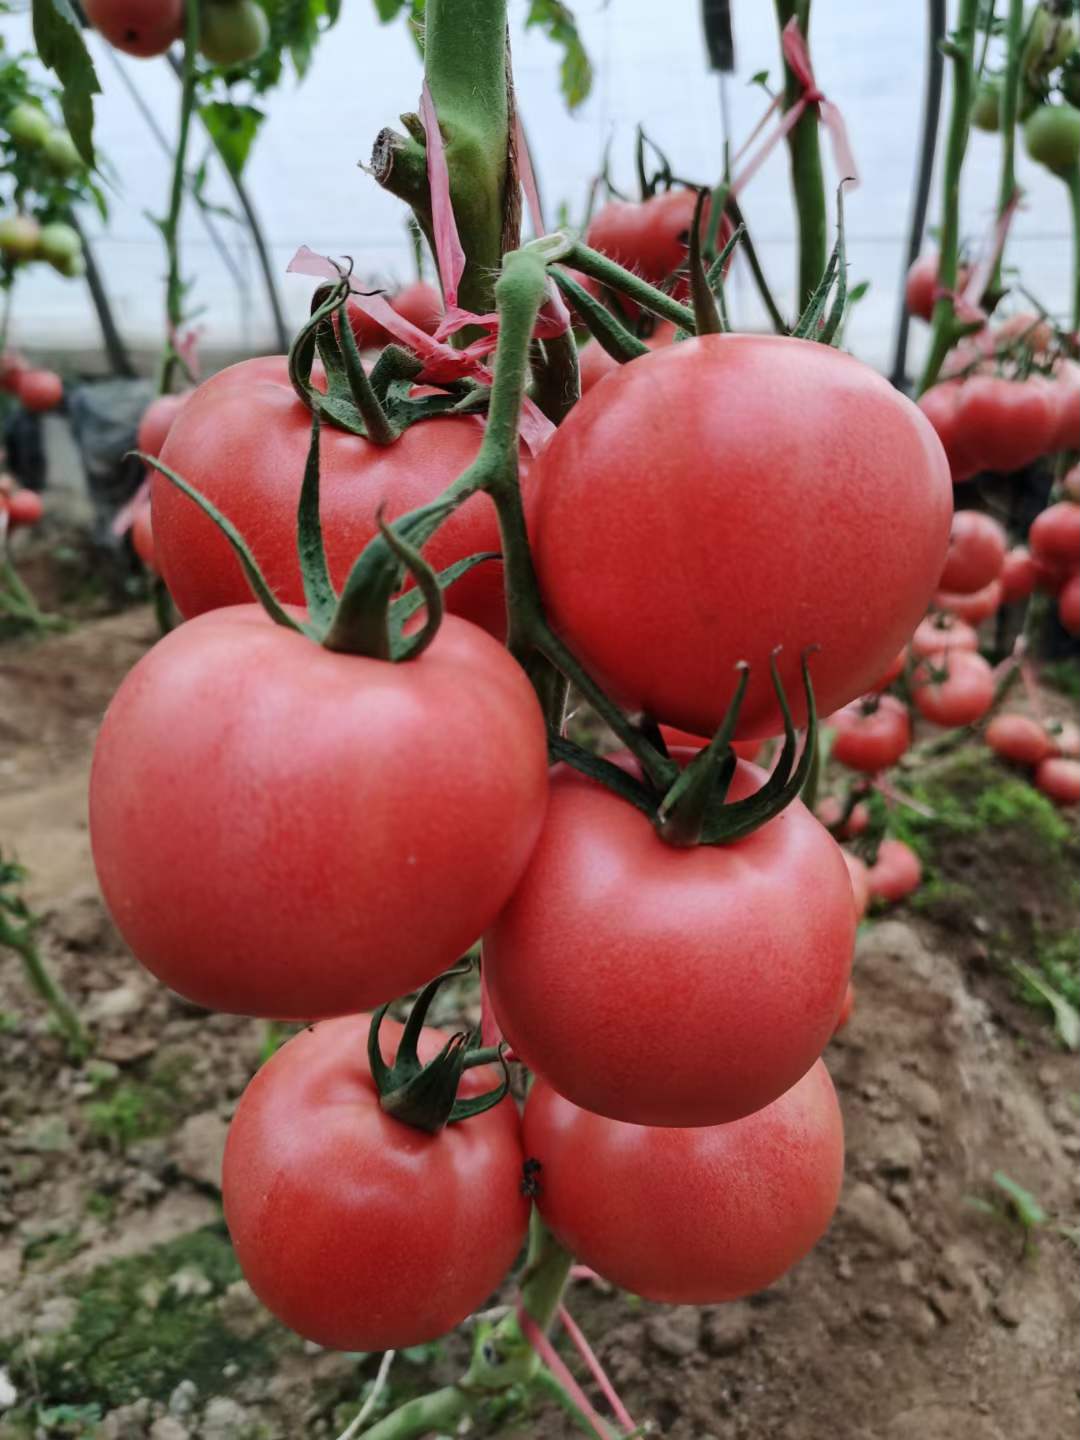 以色列海泽拉 艾妮拉 福拉 瑞拉 尼古拉 硬粉果番茄种子价格